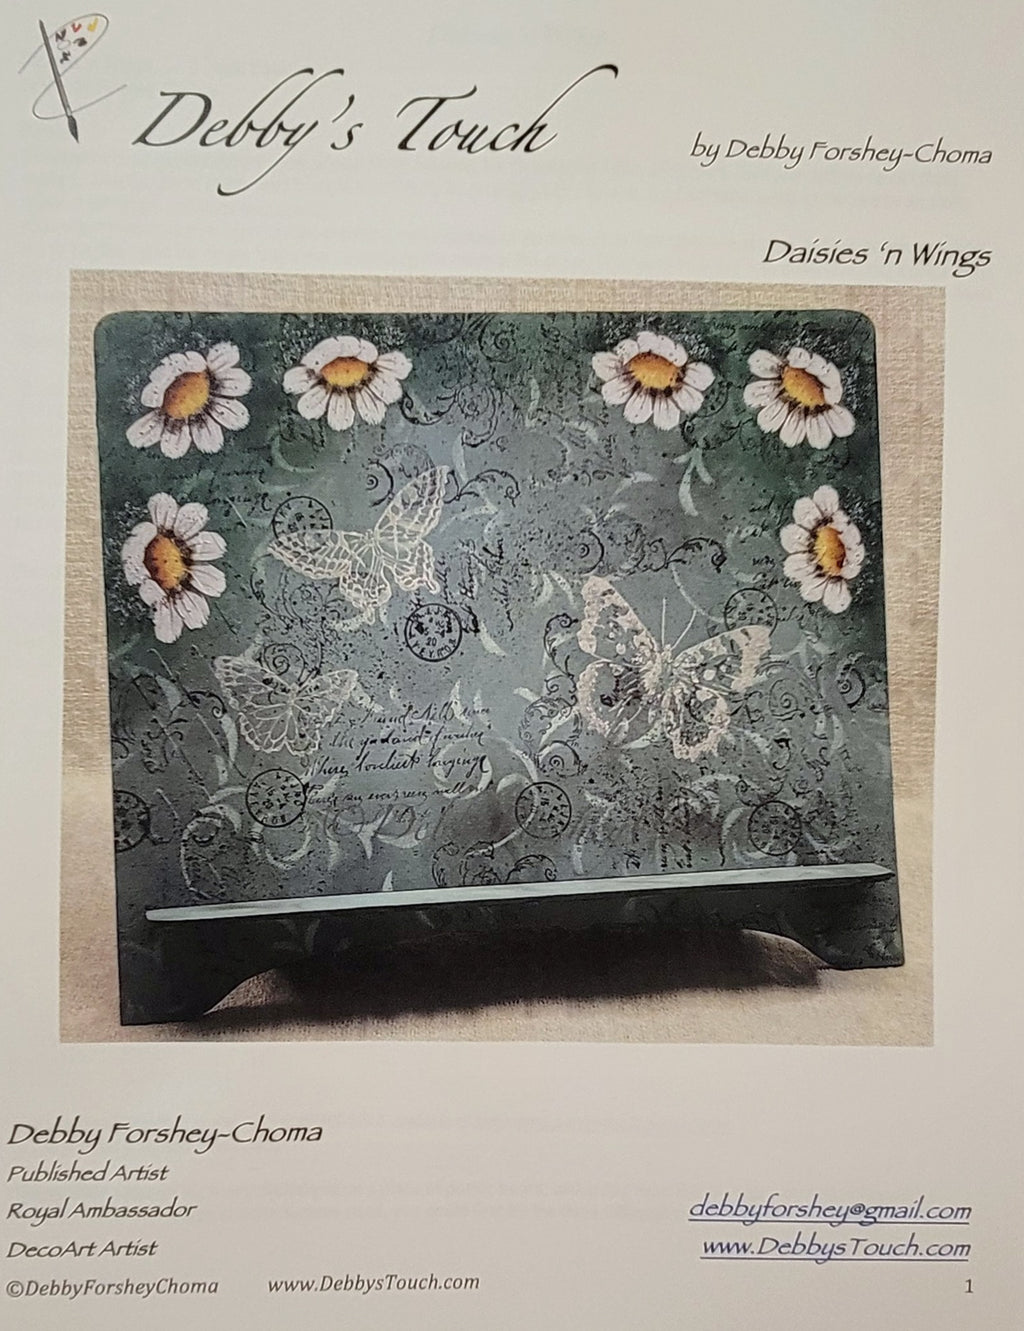 Daisies 'n Wings Packet by Debby Forshey-Choma